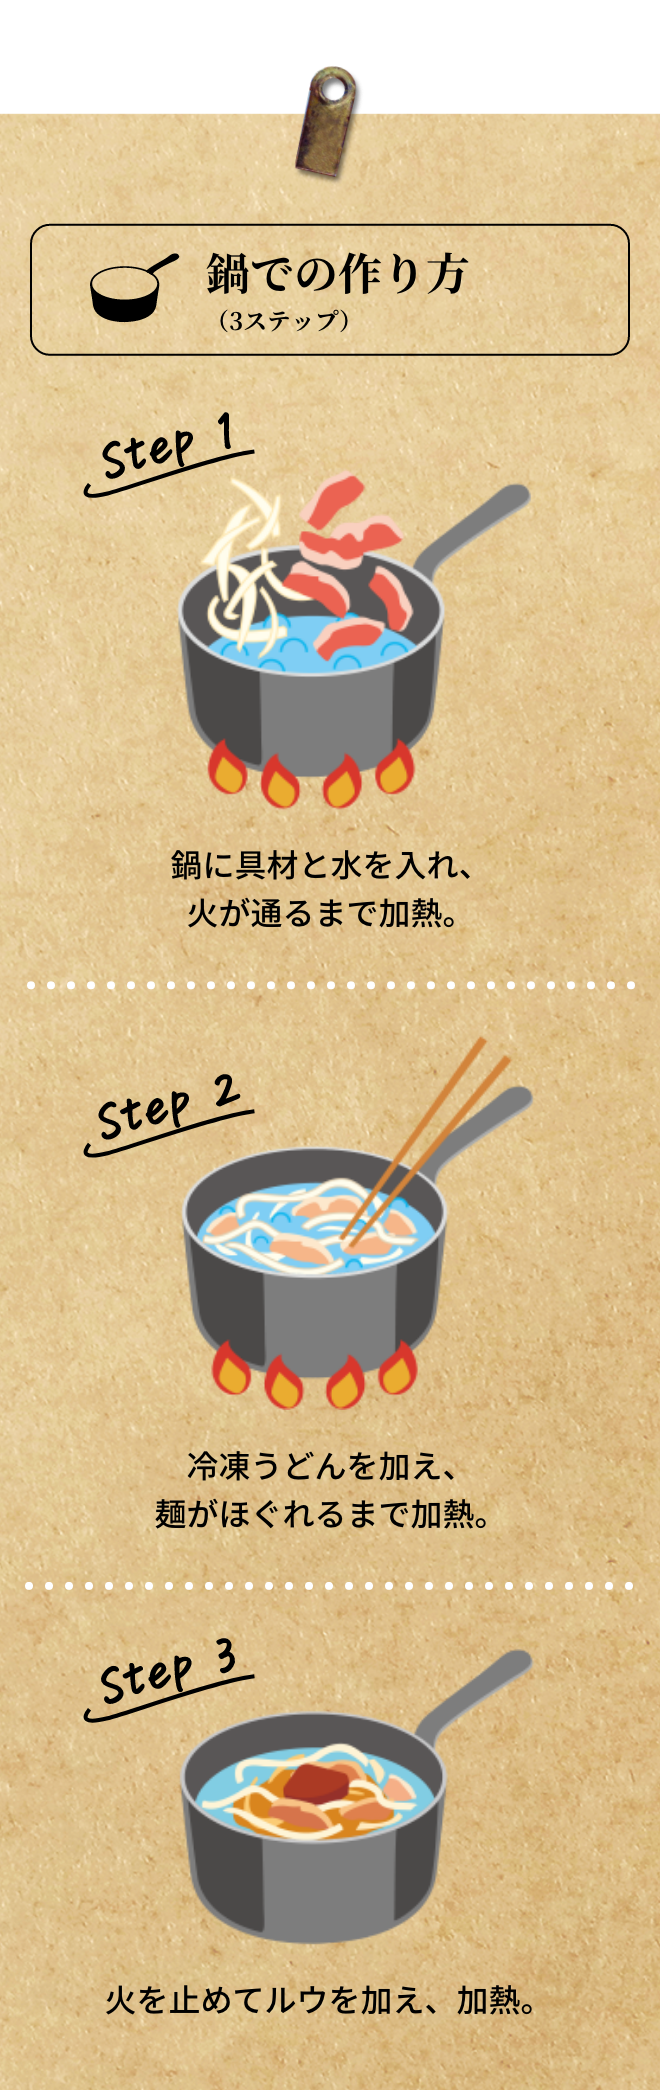 鍋での作り方(3ステップ)